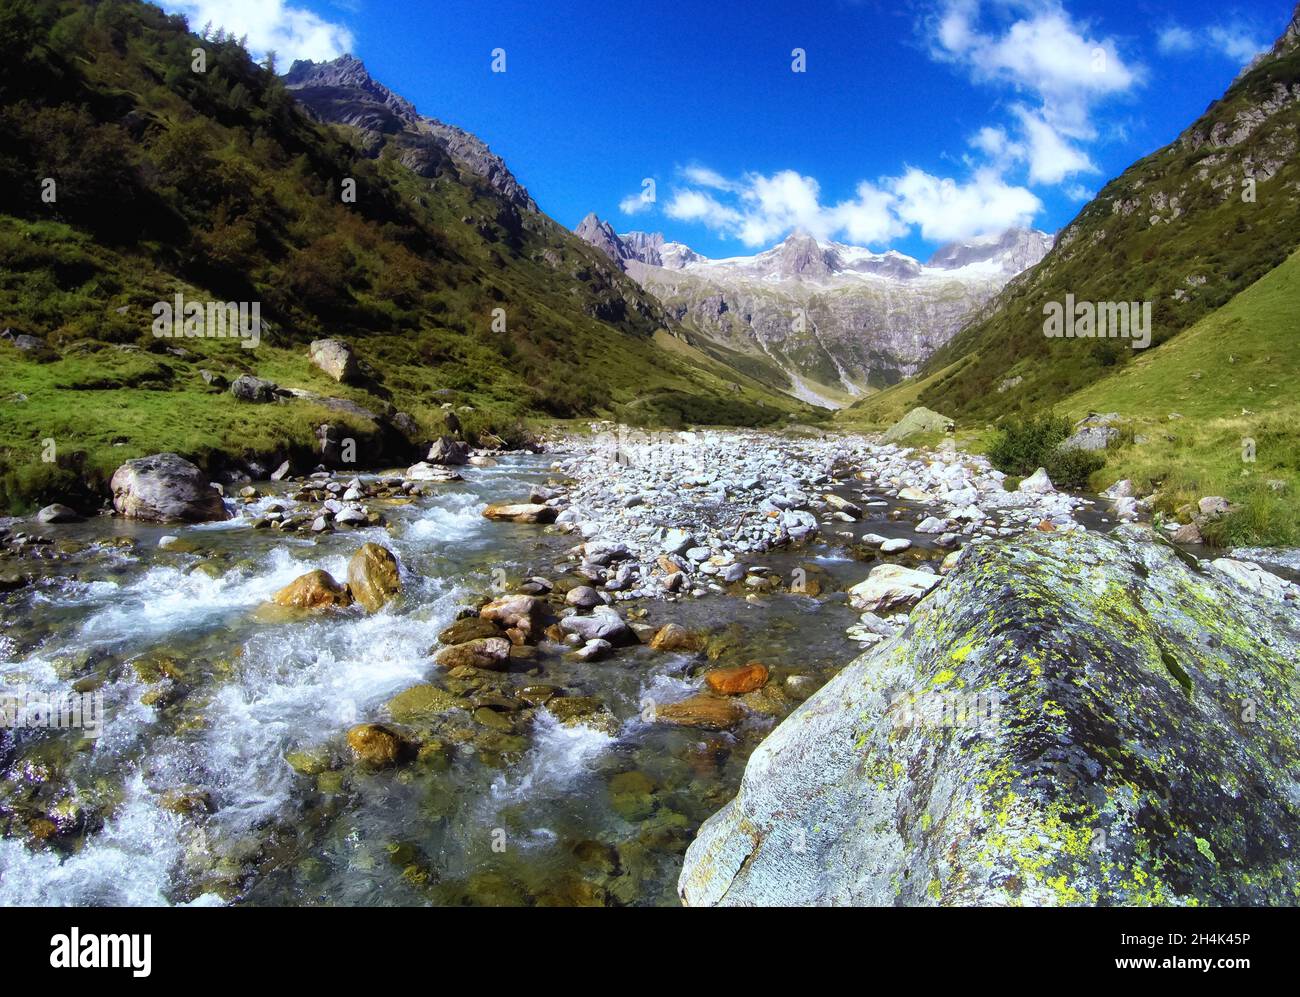 Alpine river in a mountain valley, Gorezmettlen, Wassen, Switzerland Stock Photo